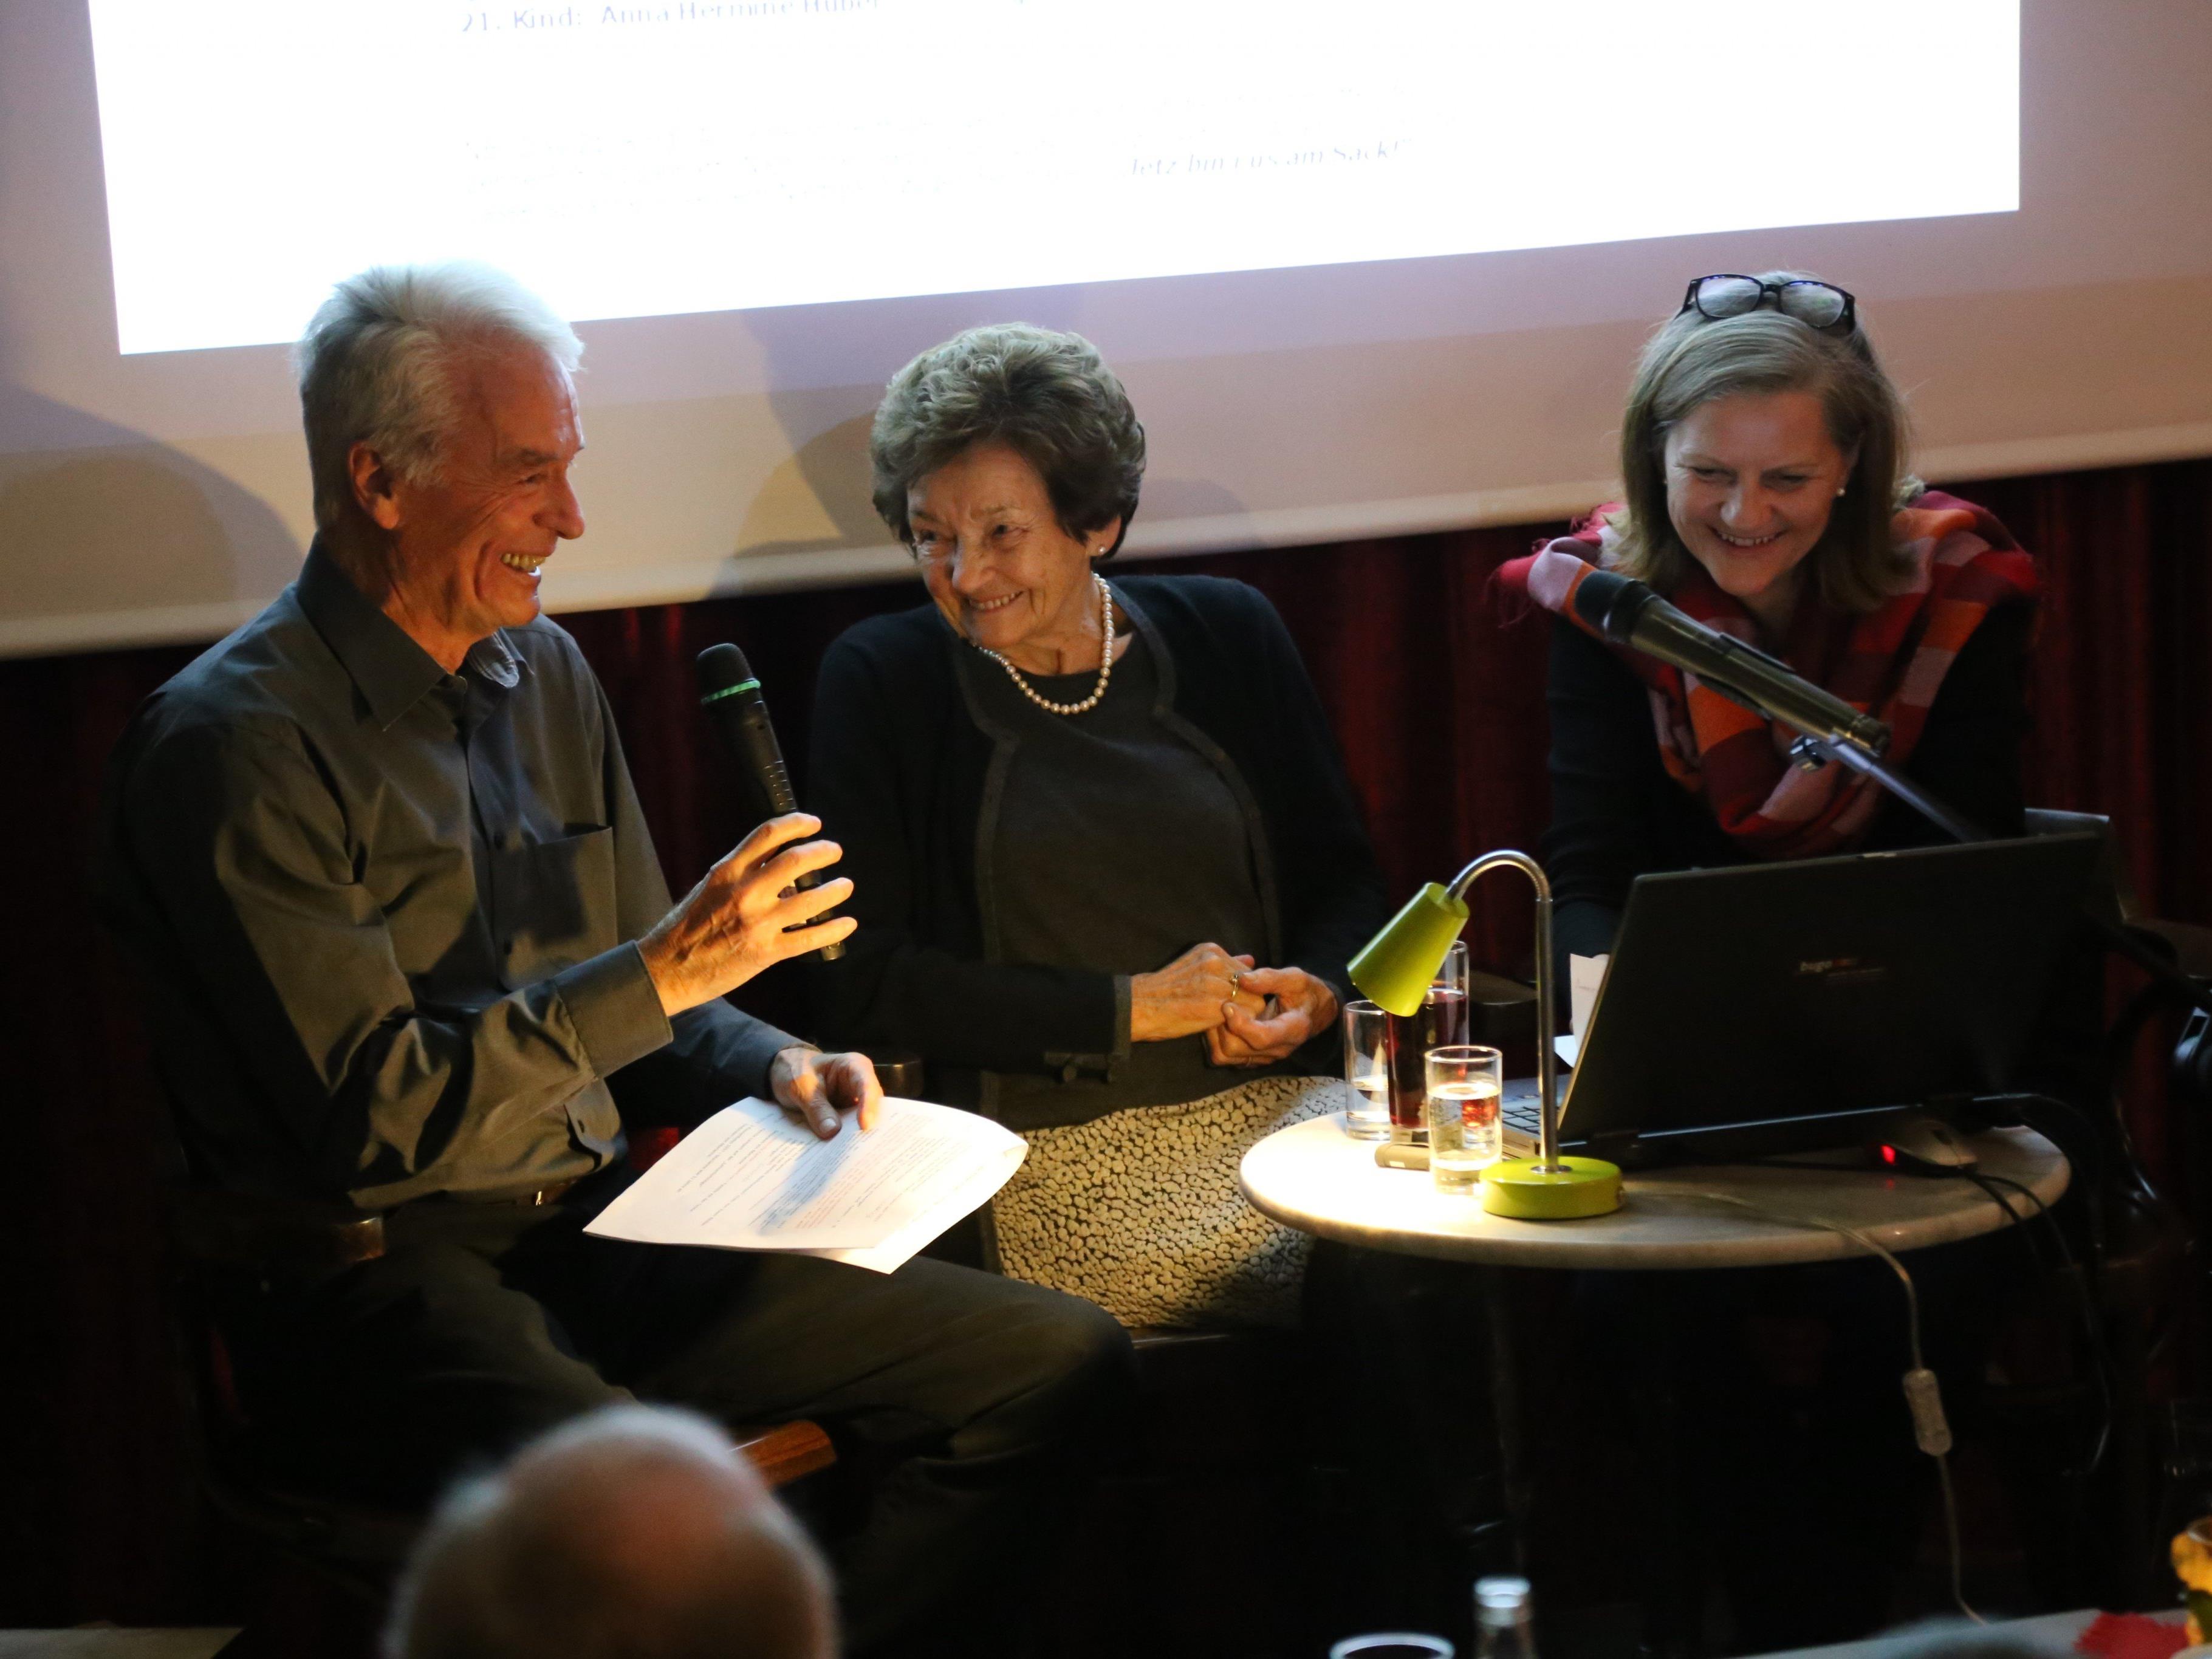 Humorvoll und informativ gestalteten Archivar Karl Lampert, Ruth Jochum-Gasser und Marianne Malin den Abend.